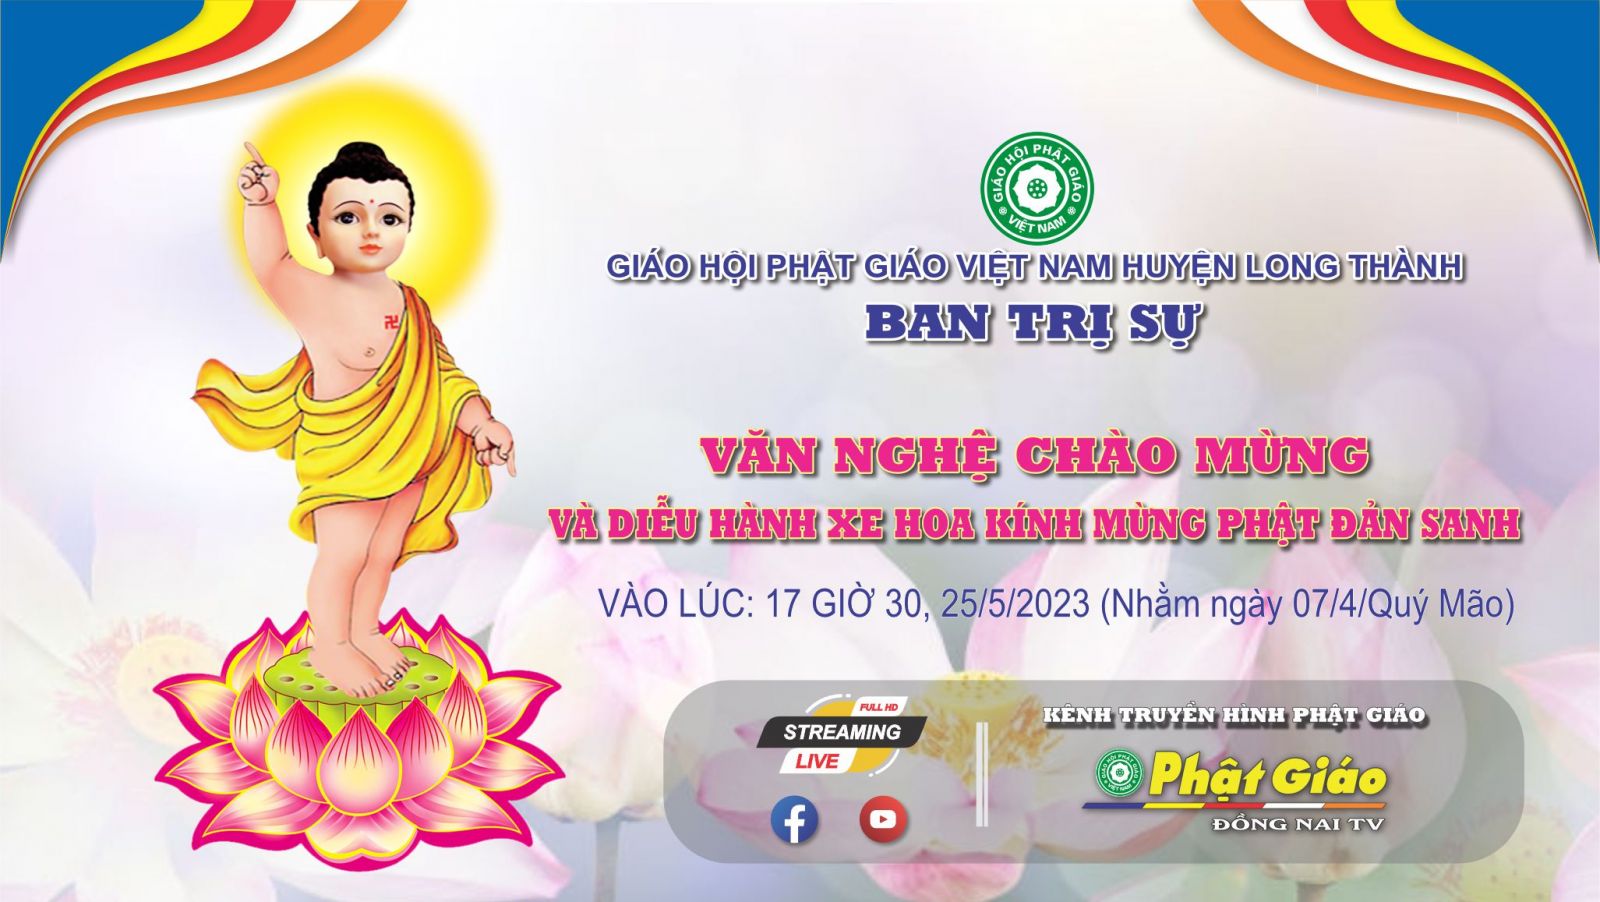 Trực tiếp: Văn Nghệ Chào Mừng & Diễu Hành Xe Hoa Mừng Phật Đản PL. 2567 - DL. 2023 tại Ban Trị sự huyện Long Thành